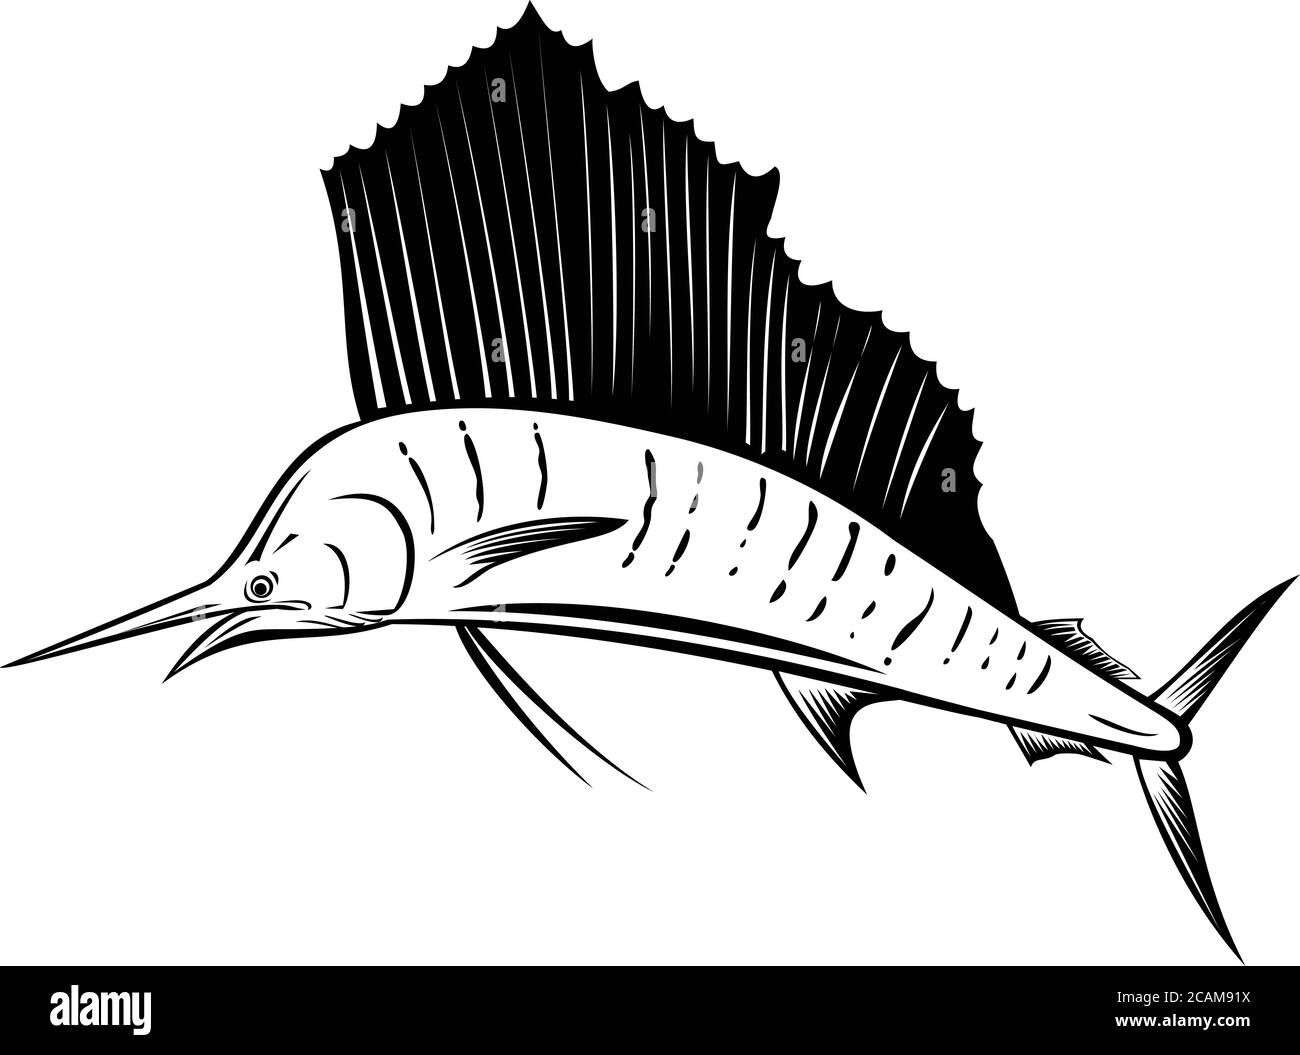 Illustration de style rétro avec coupe de bois d'un voilier Indo-Pacifique, un poisson du genre istiophorus de billfish originaire des océans Indien et Pacifique, sautant Illustration de Vecteur